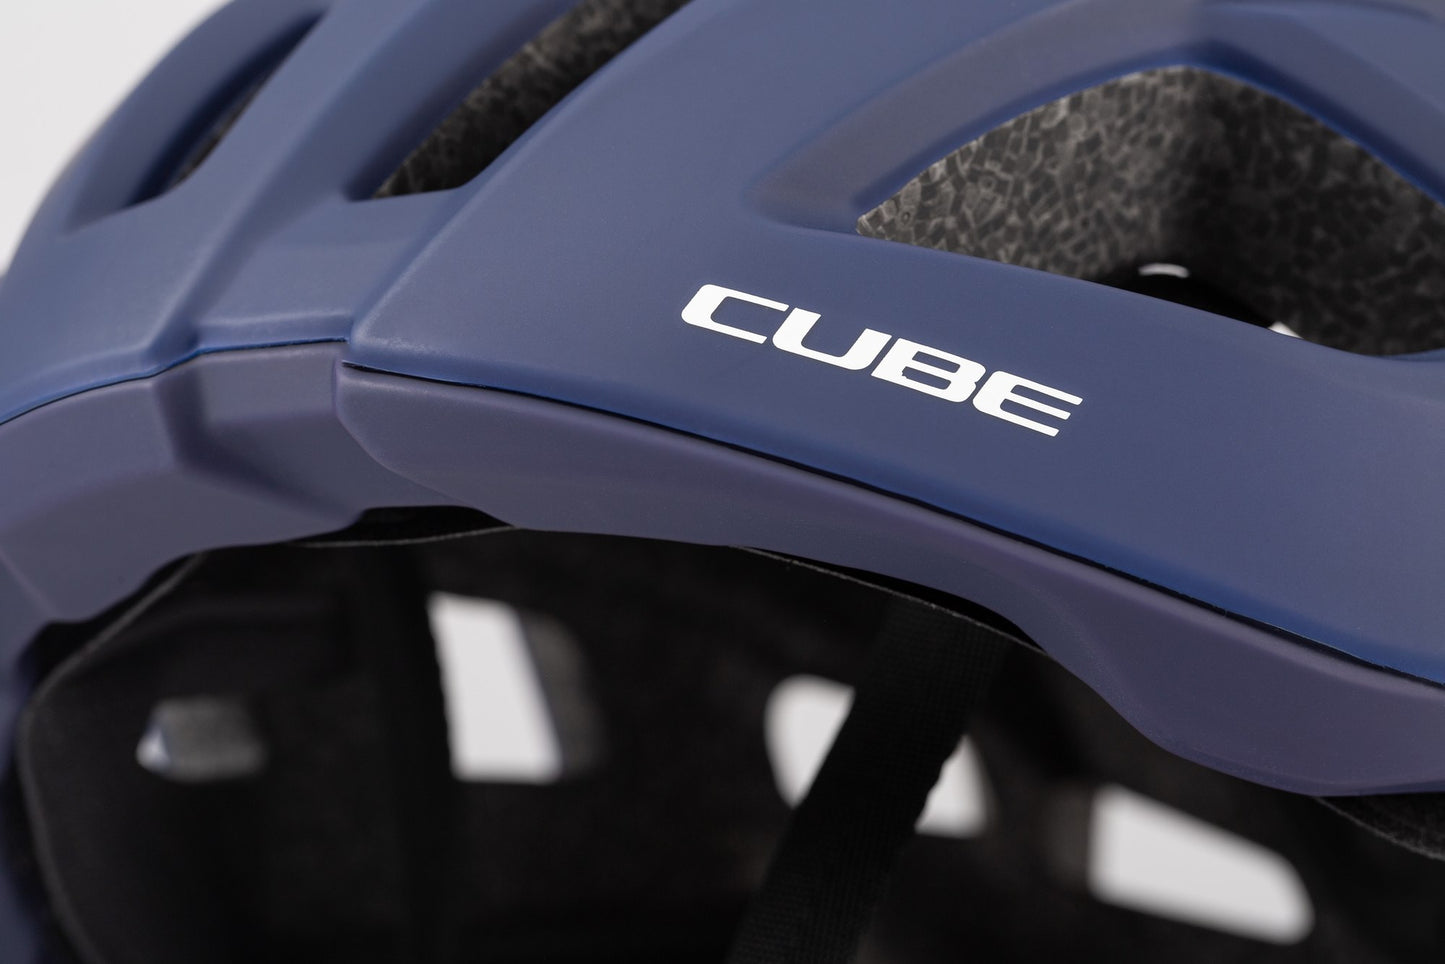 CUBE Helmet Road Race Teamline Blu/Min